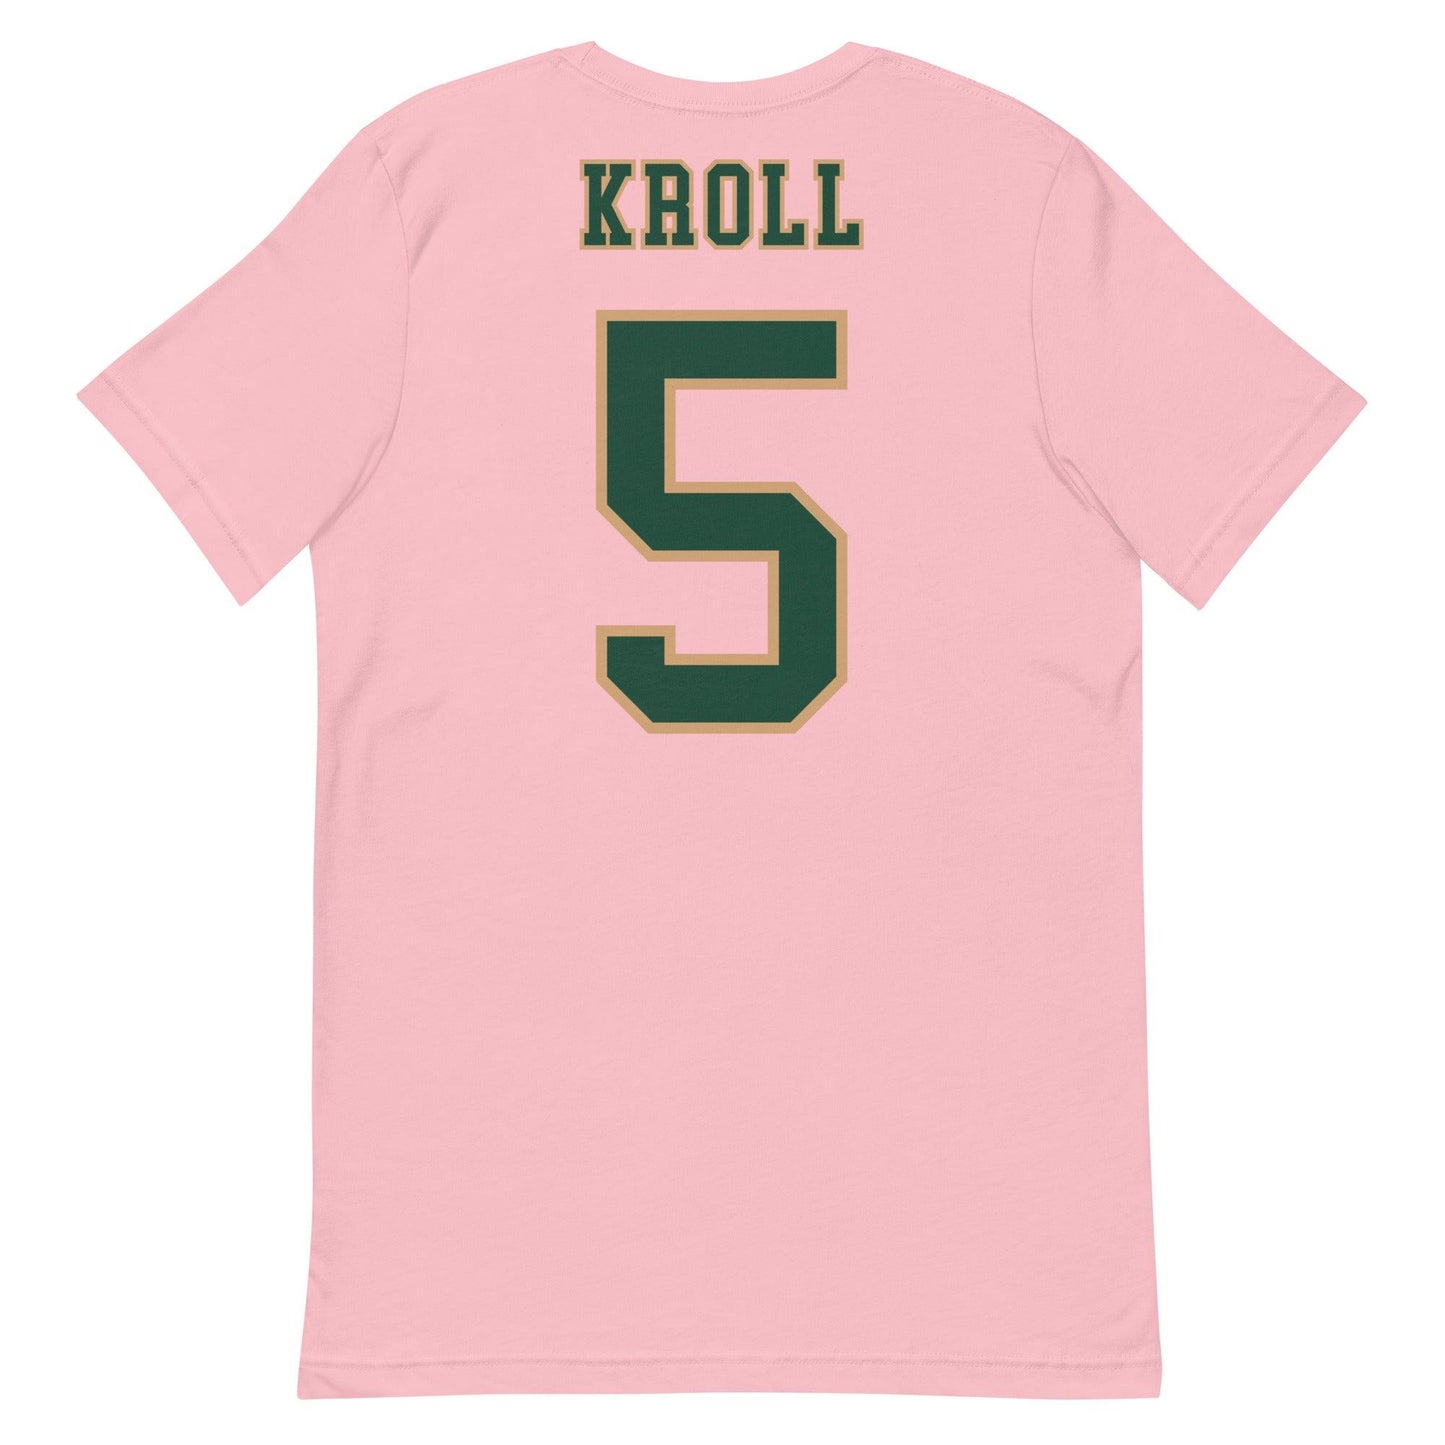 Caitlyn Kroll "Jersey" t-shirt - Fan Arch